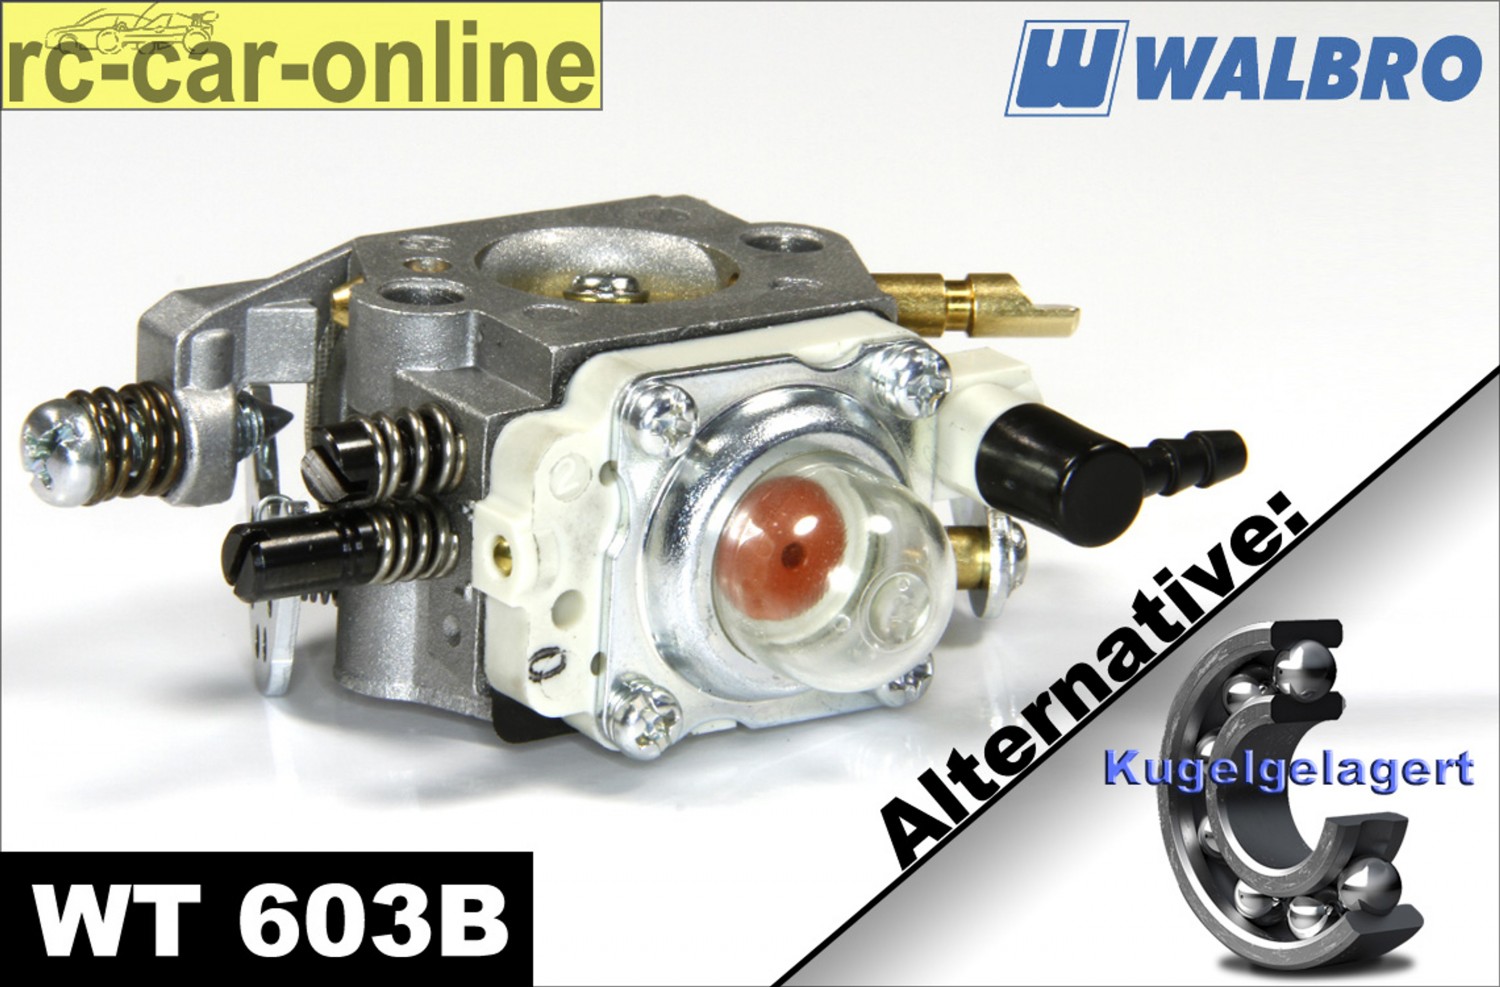 275081000 vergaser Montage Für RedMax EB6200 Blatt Gebläse Walbro Carb  WYK-73-1